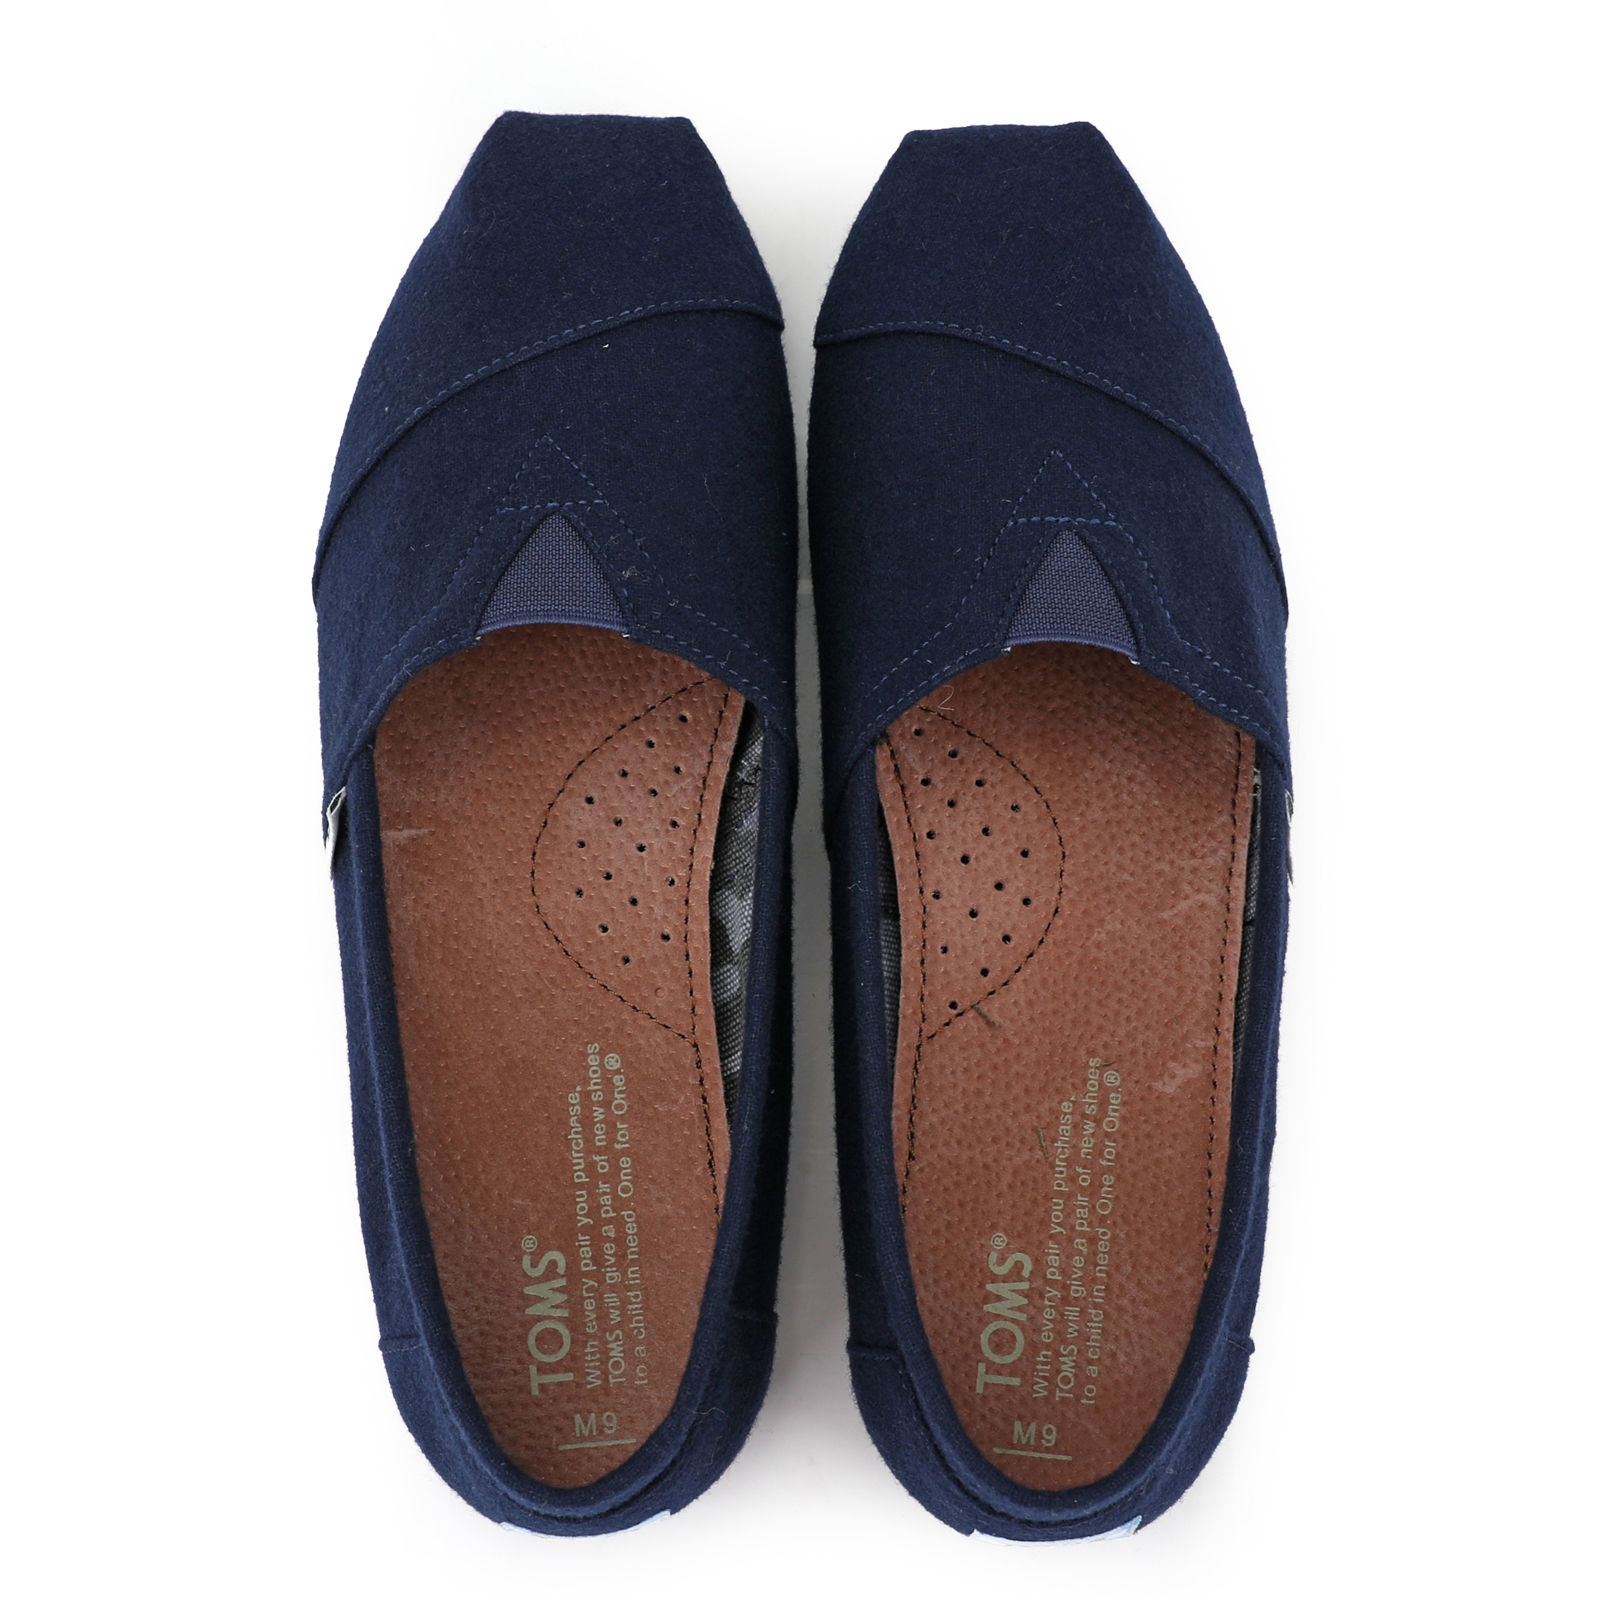 Toms台灣新款藍色法蘭絨男鞋 - 點擊圖片關閉